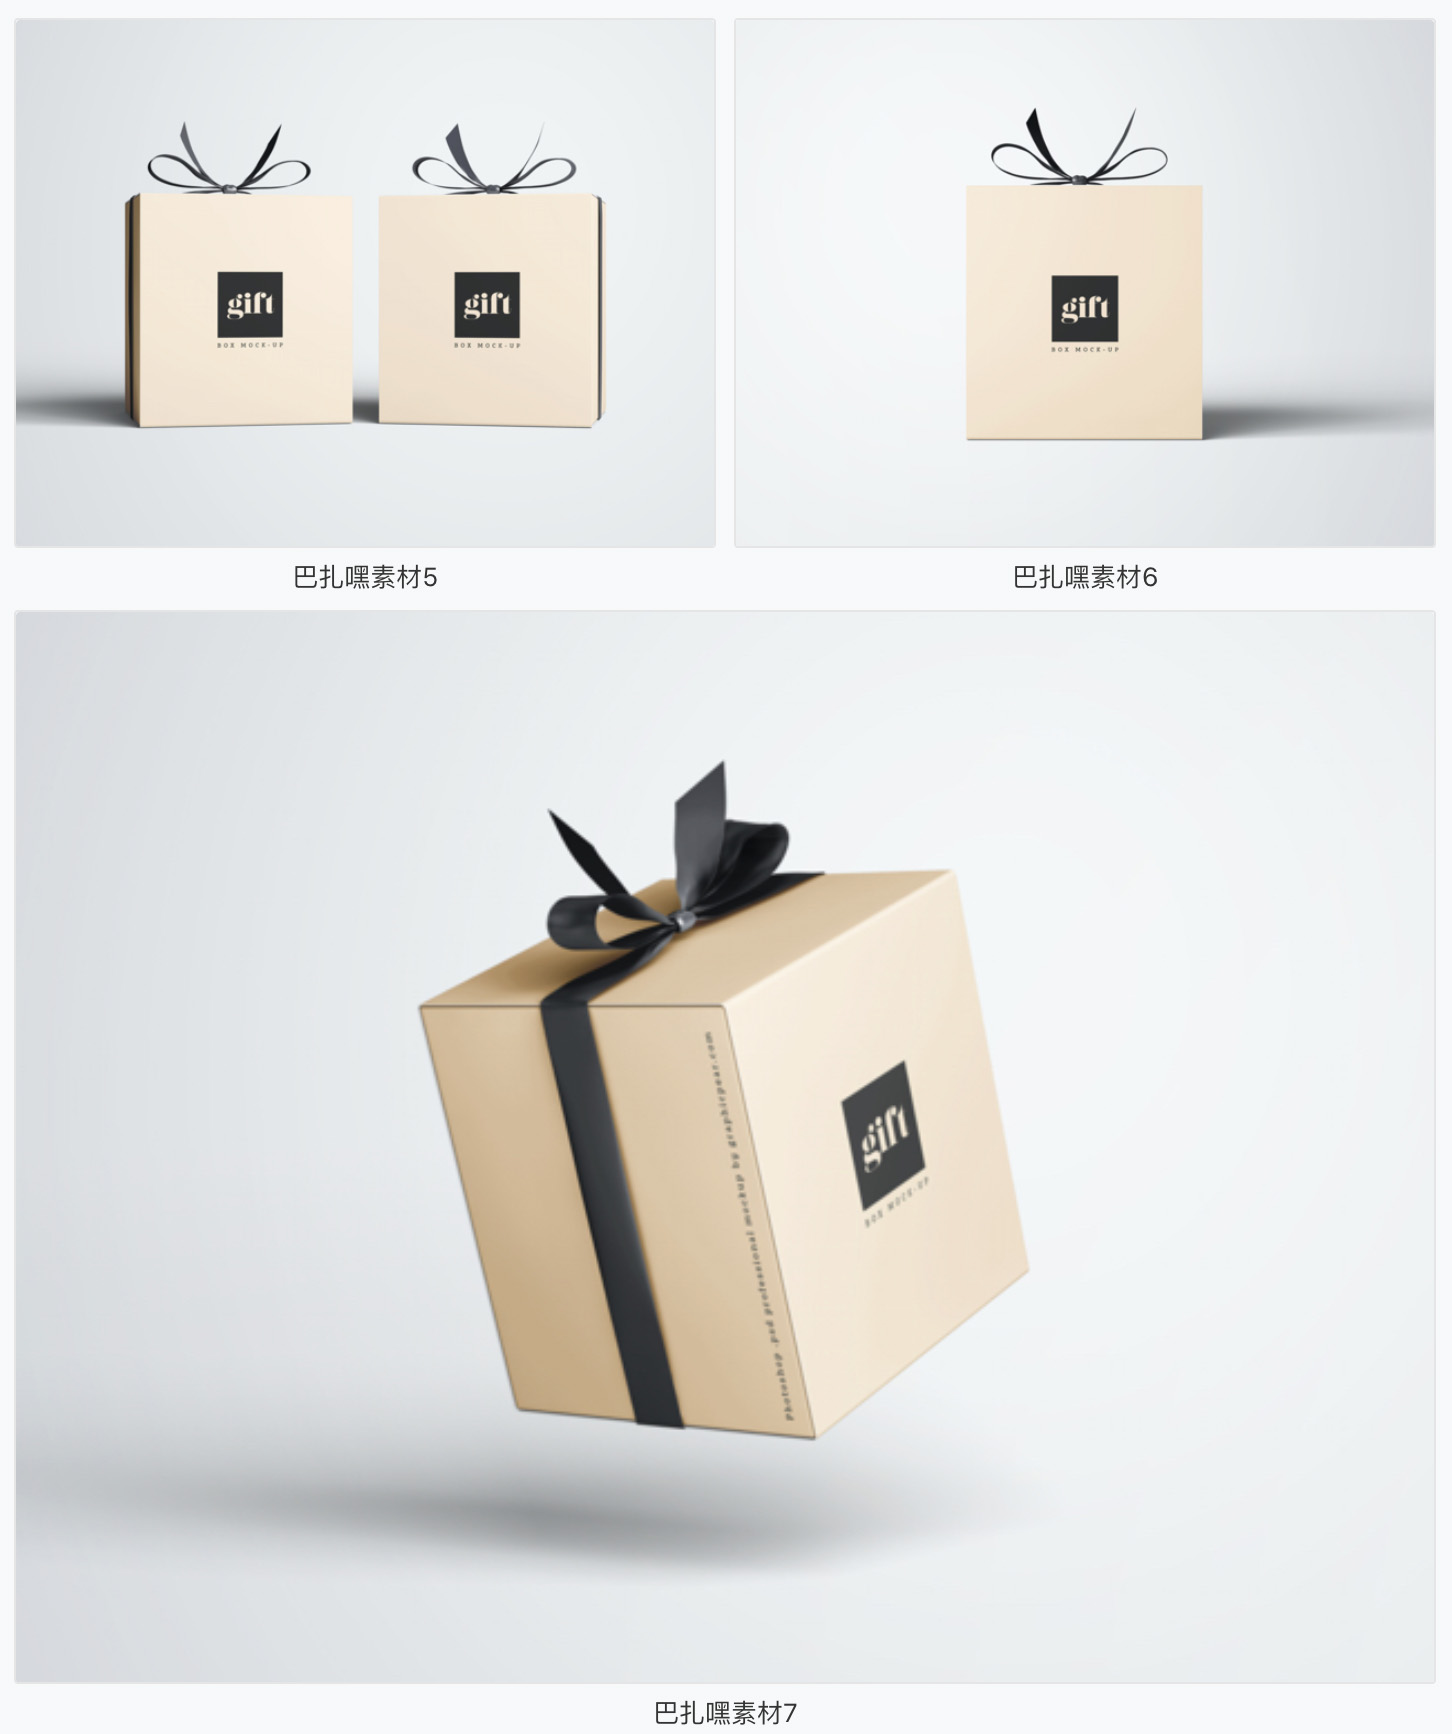 【礼盒样机】礼品包装盒智能贴图样机VI礼物文创展示效果图